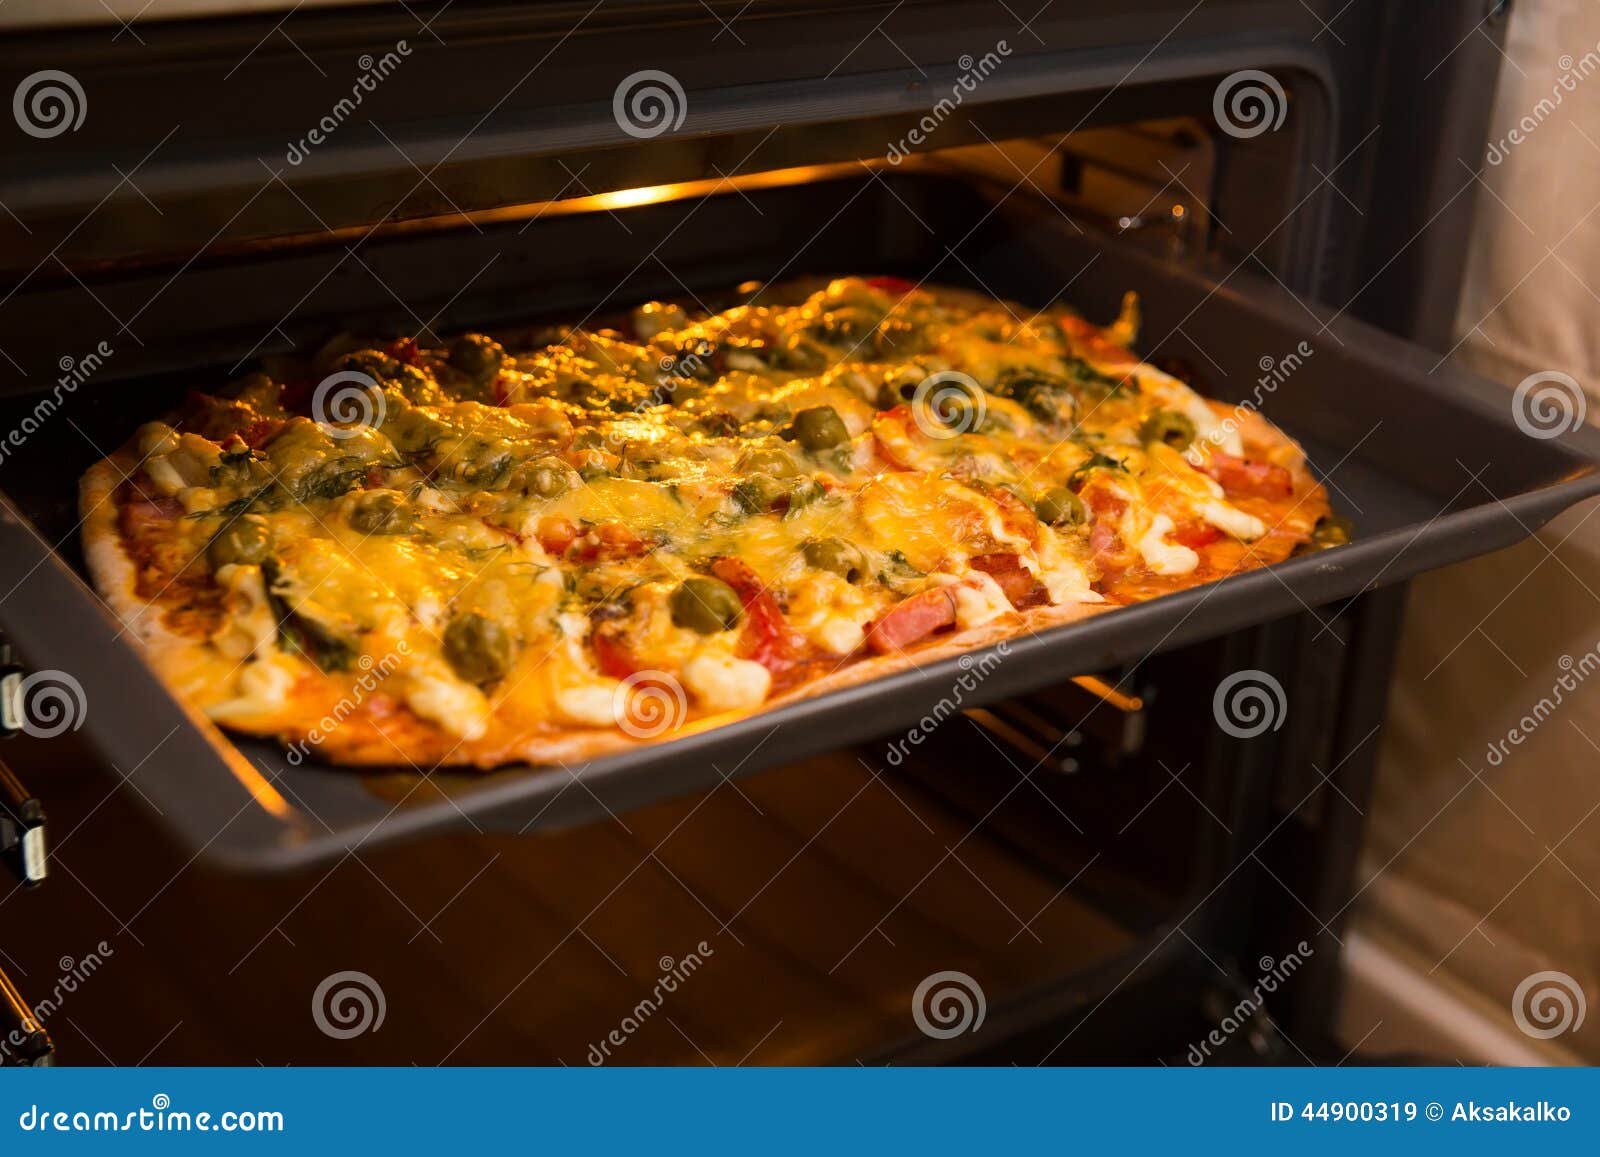 что делать чтобы не пригорала пицца в духовке фото 11